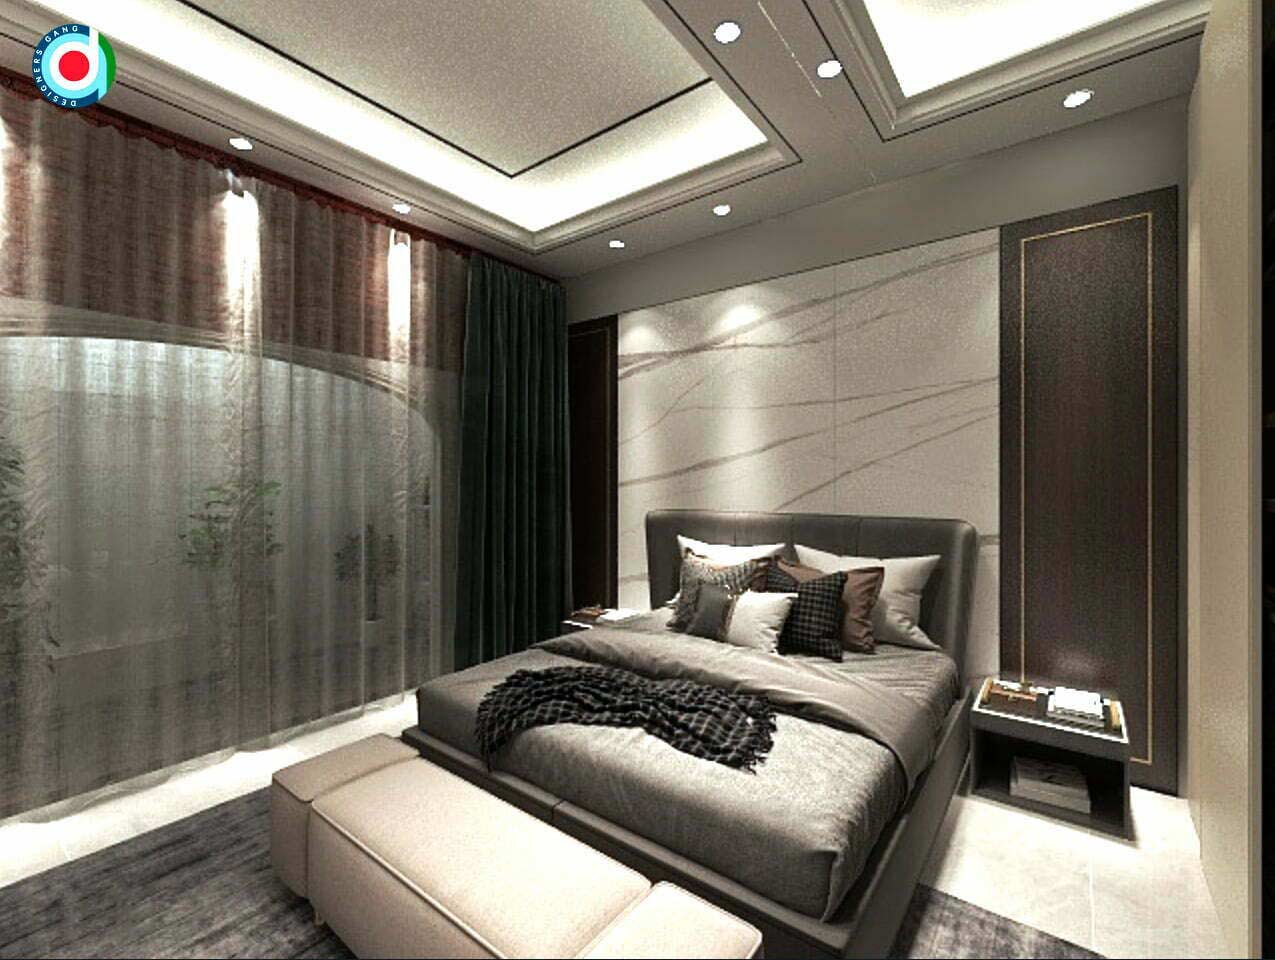 Designer Bed Design by DesignersGroup